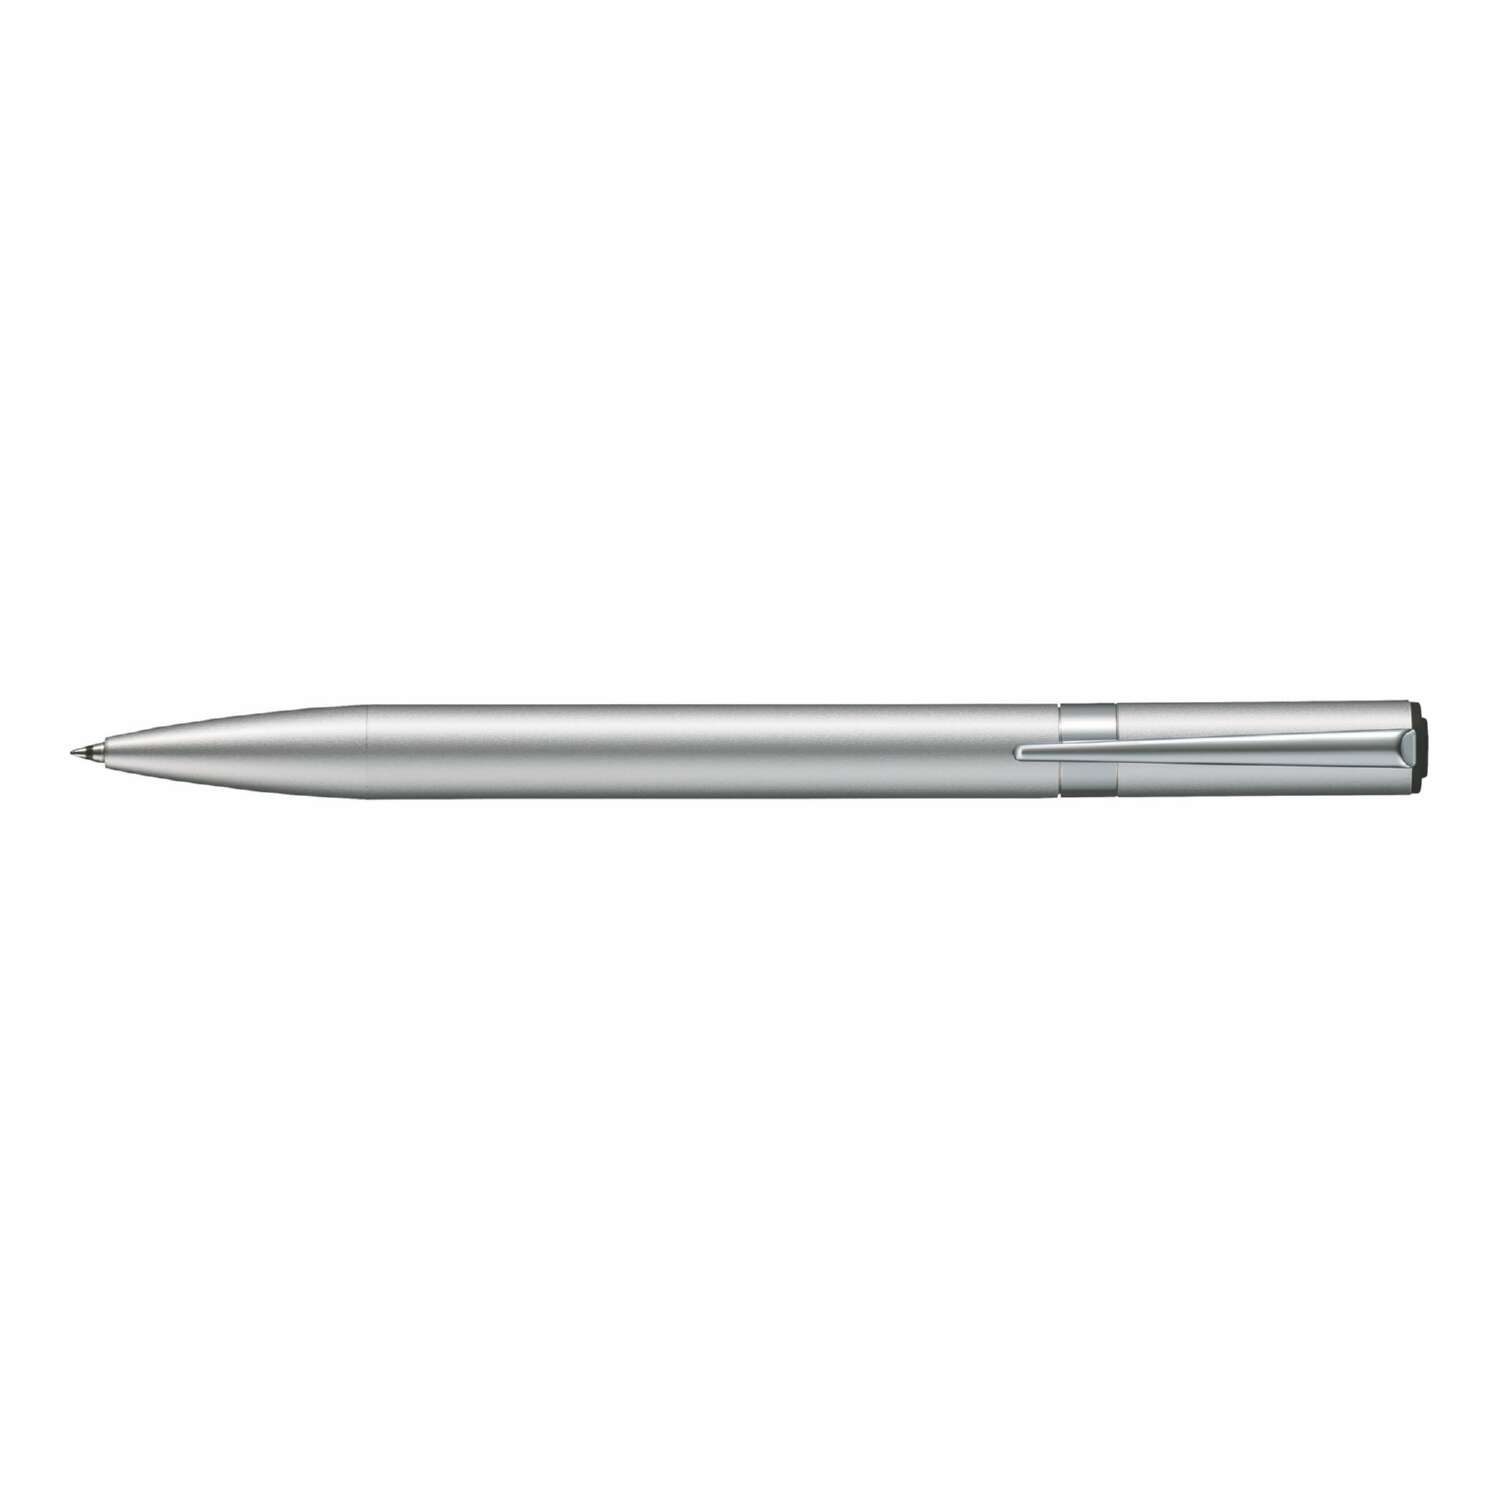 Ручка шариковая Tombow ZOOM L105 City черная корпус серебряный линия 0.7 мм подарочная упаковка - фото 3